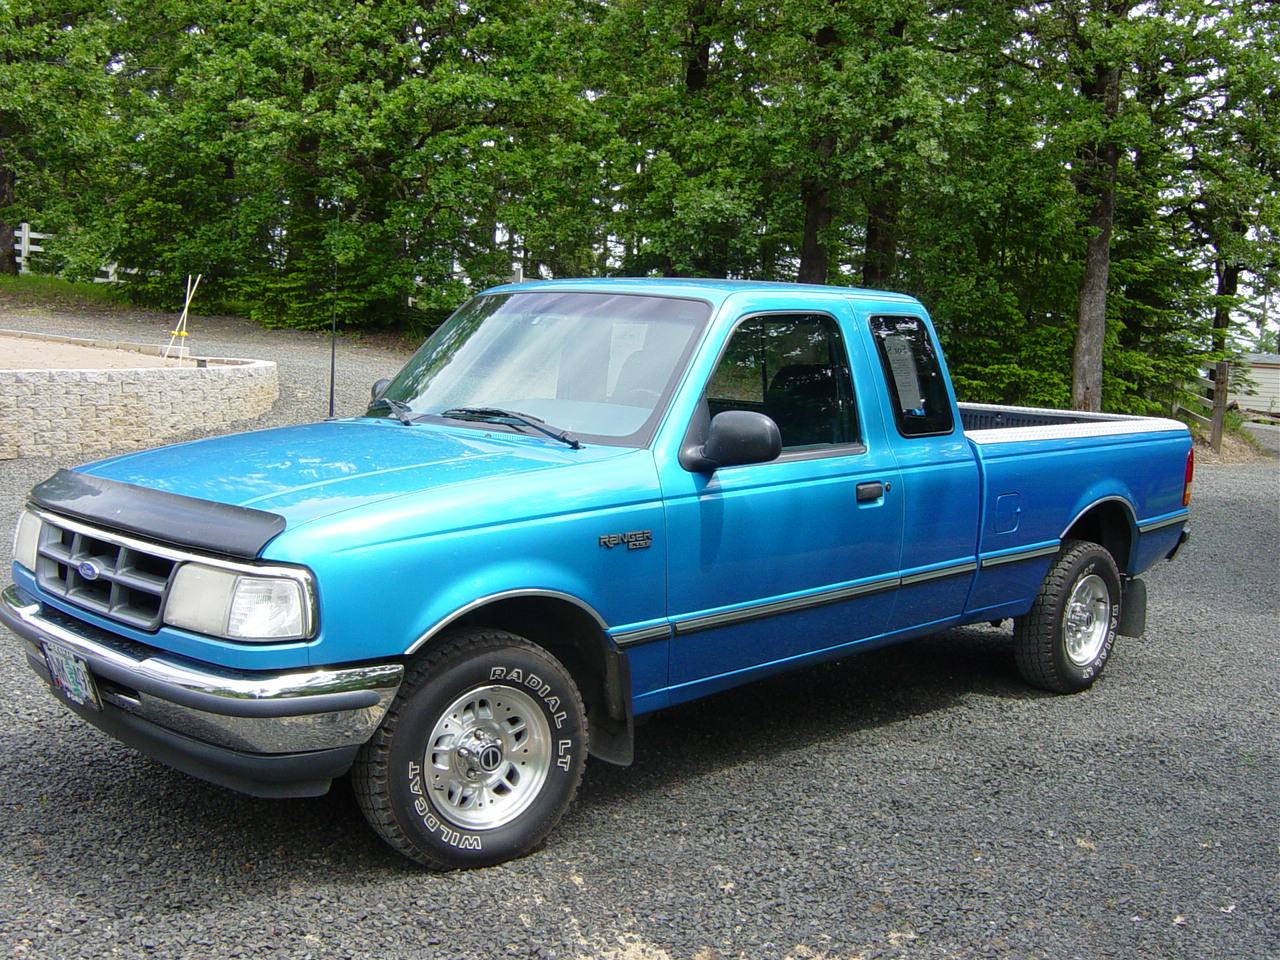 1994 Ford ranger xlt extended cab specs #8